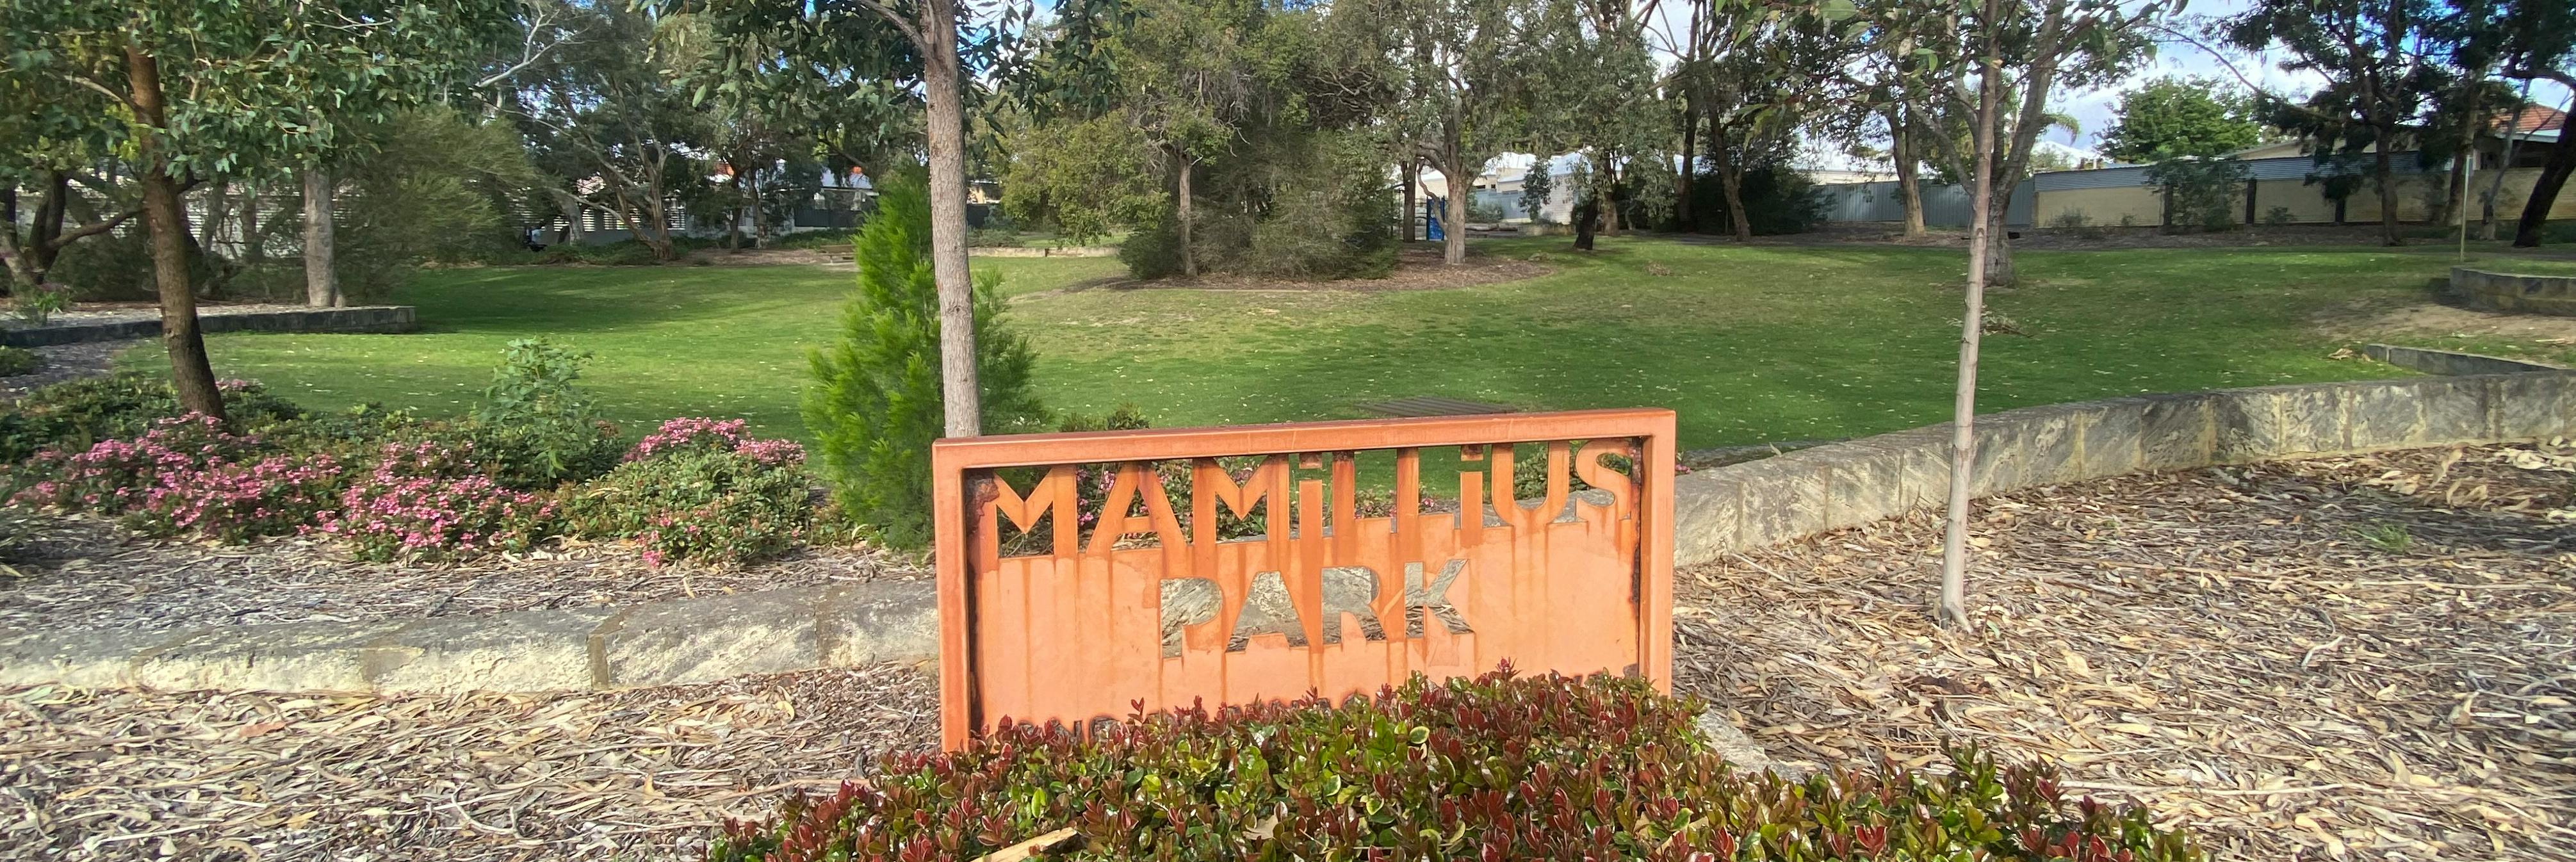 Photo of Mamillius Park